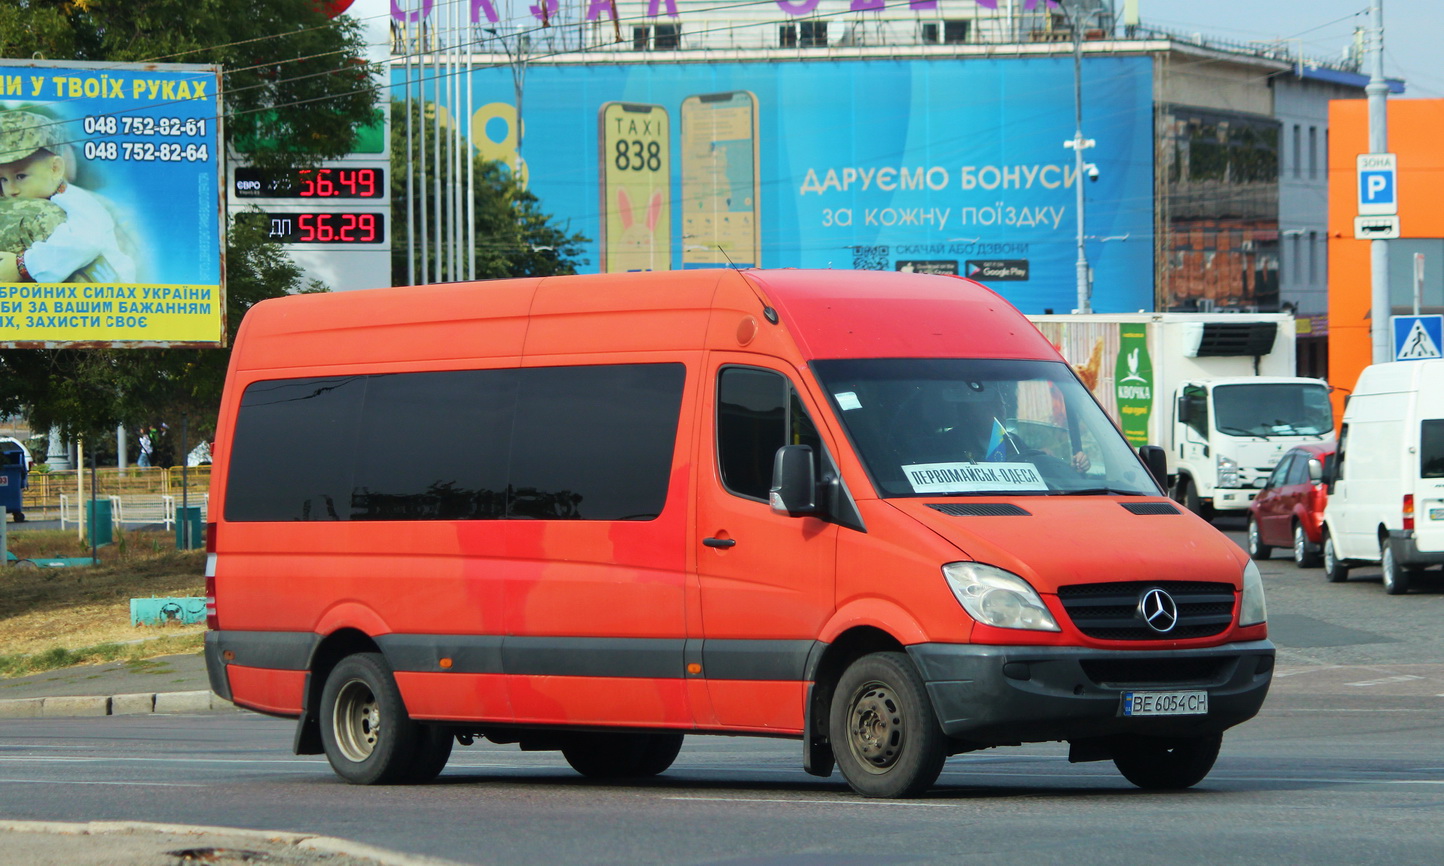 Николаевская область, Mercedes-Benz Sprinter W906 516CDI № BE 6054 CH